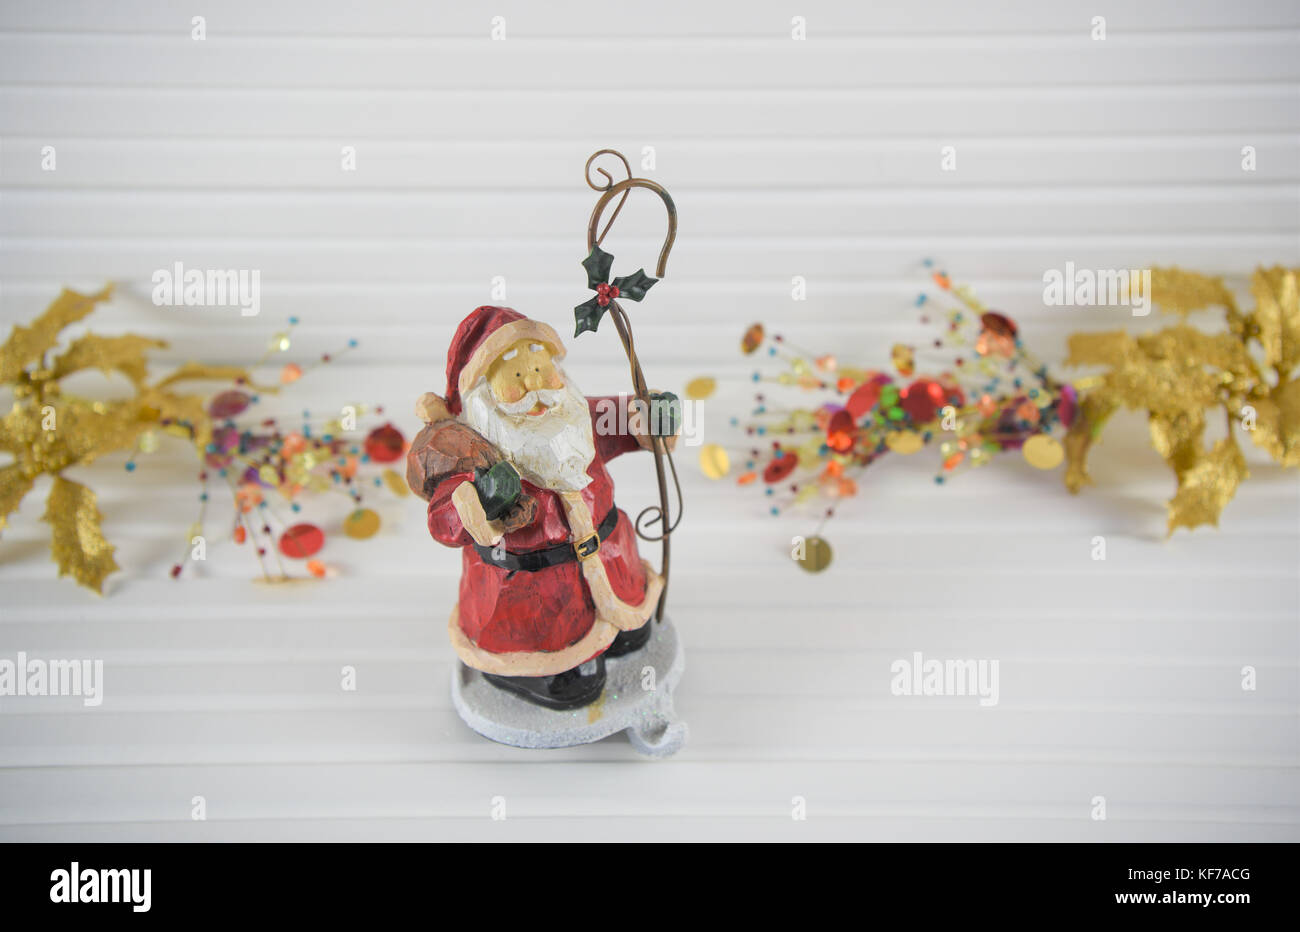 Fröhlich bunte Weihnachten fotografie Bild der traditionellen Holz santa stocking Kleiderbügel Haken mit gold Rot hell Holly und xmas Schmuckstücke im Hintergrund Stockfoto